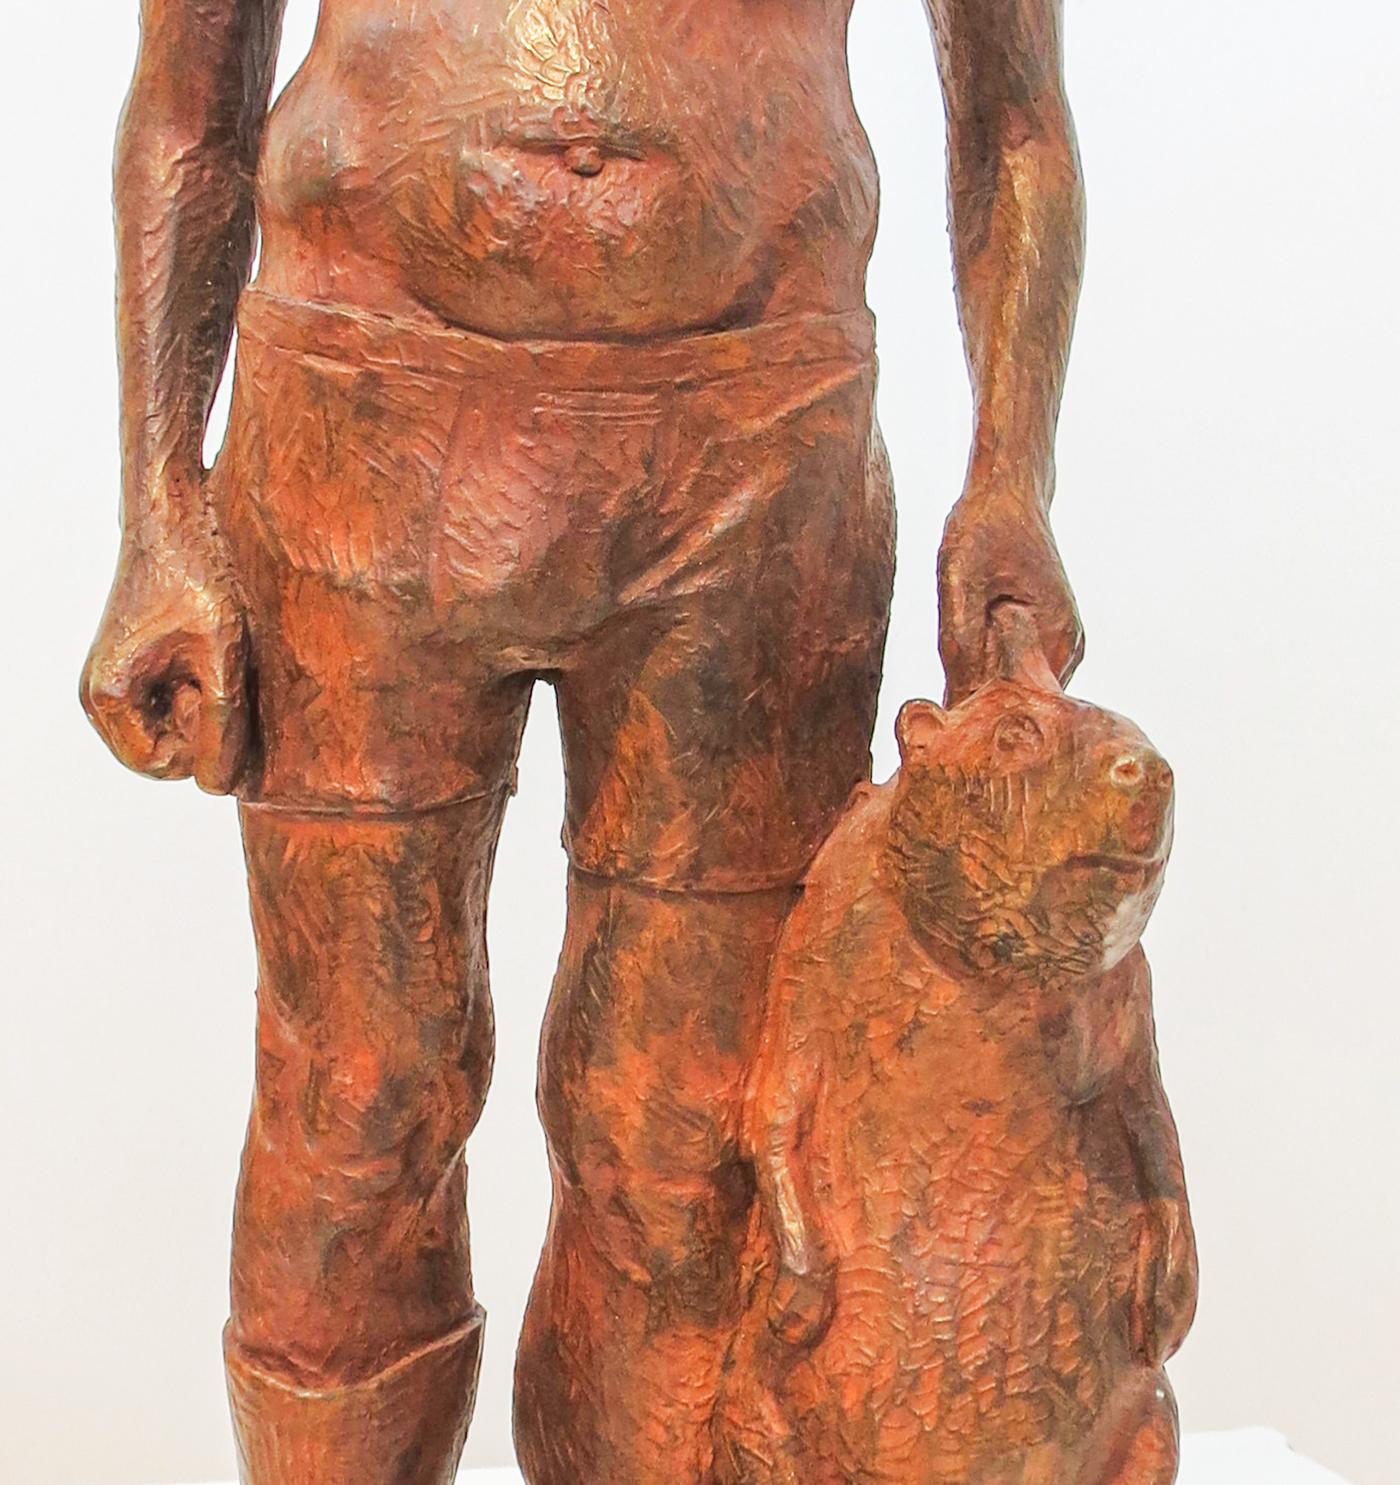 Ambivalenz ist in Bronze gegossen und in einer Auflage von 4 Stück erhältlich. Die Figur steht in Unterwäsche da, ein Gummistiefel an, einer ausgezogen, ein Biber baumelt in der Hand.

Nicholas Crombach (geb. 1989, Kingston, ON) schloss 2012 sein